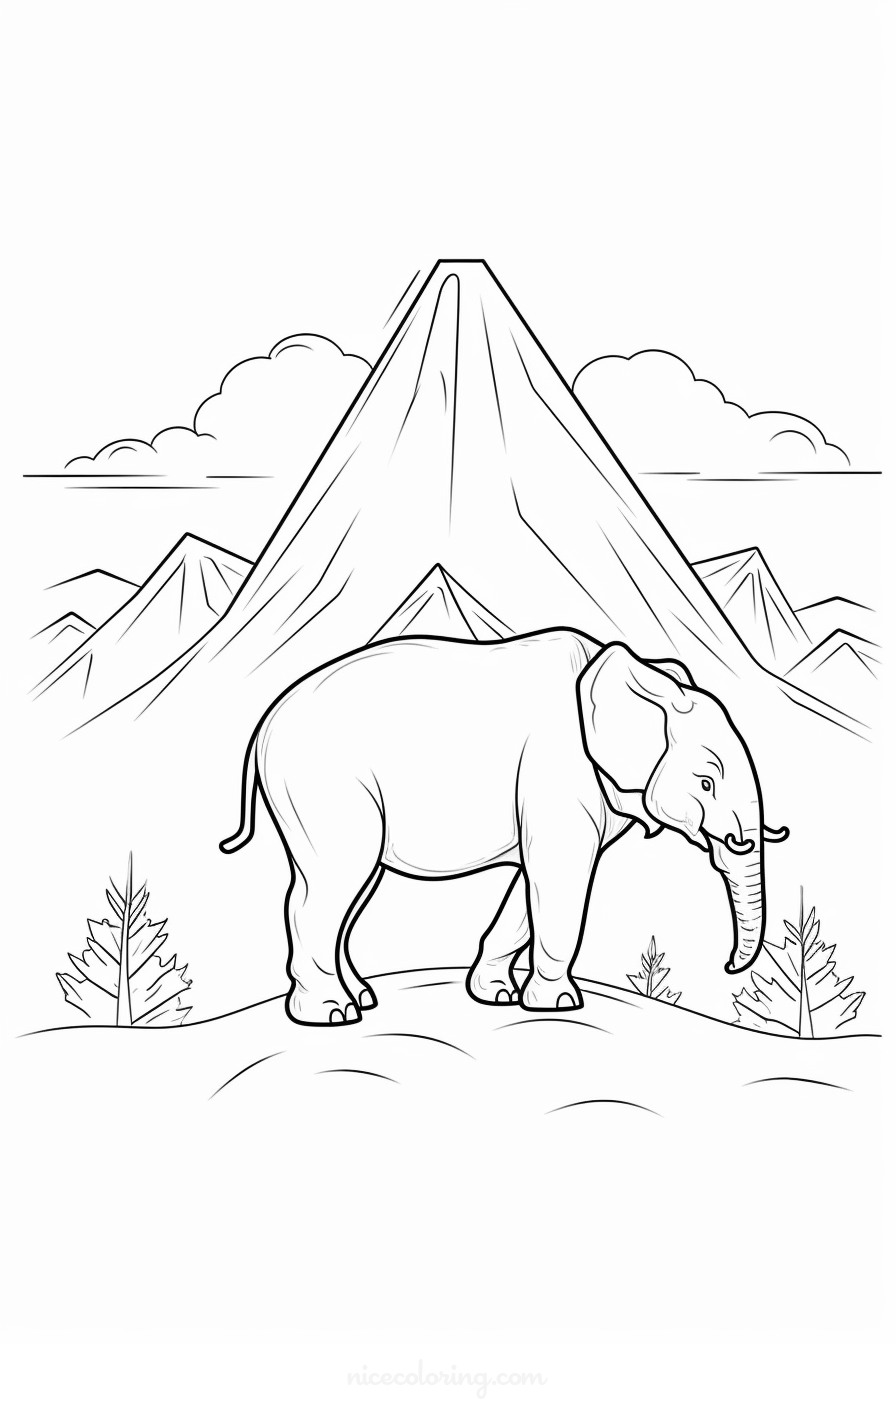 جنگل کی ترتیب میں ہاتھی کے خاندان کا رنگین صفحہ